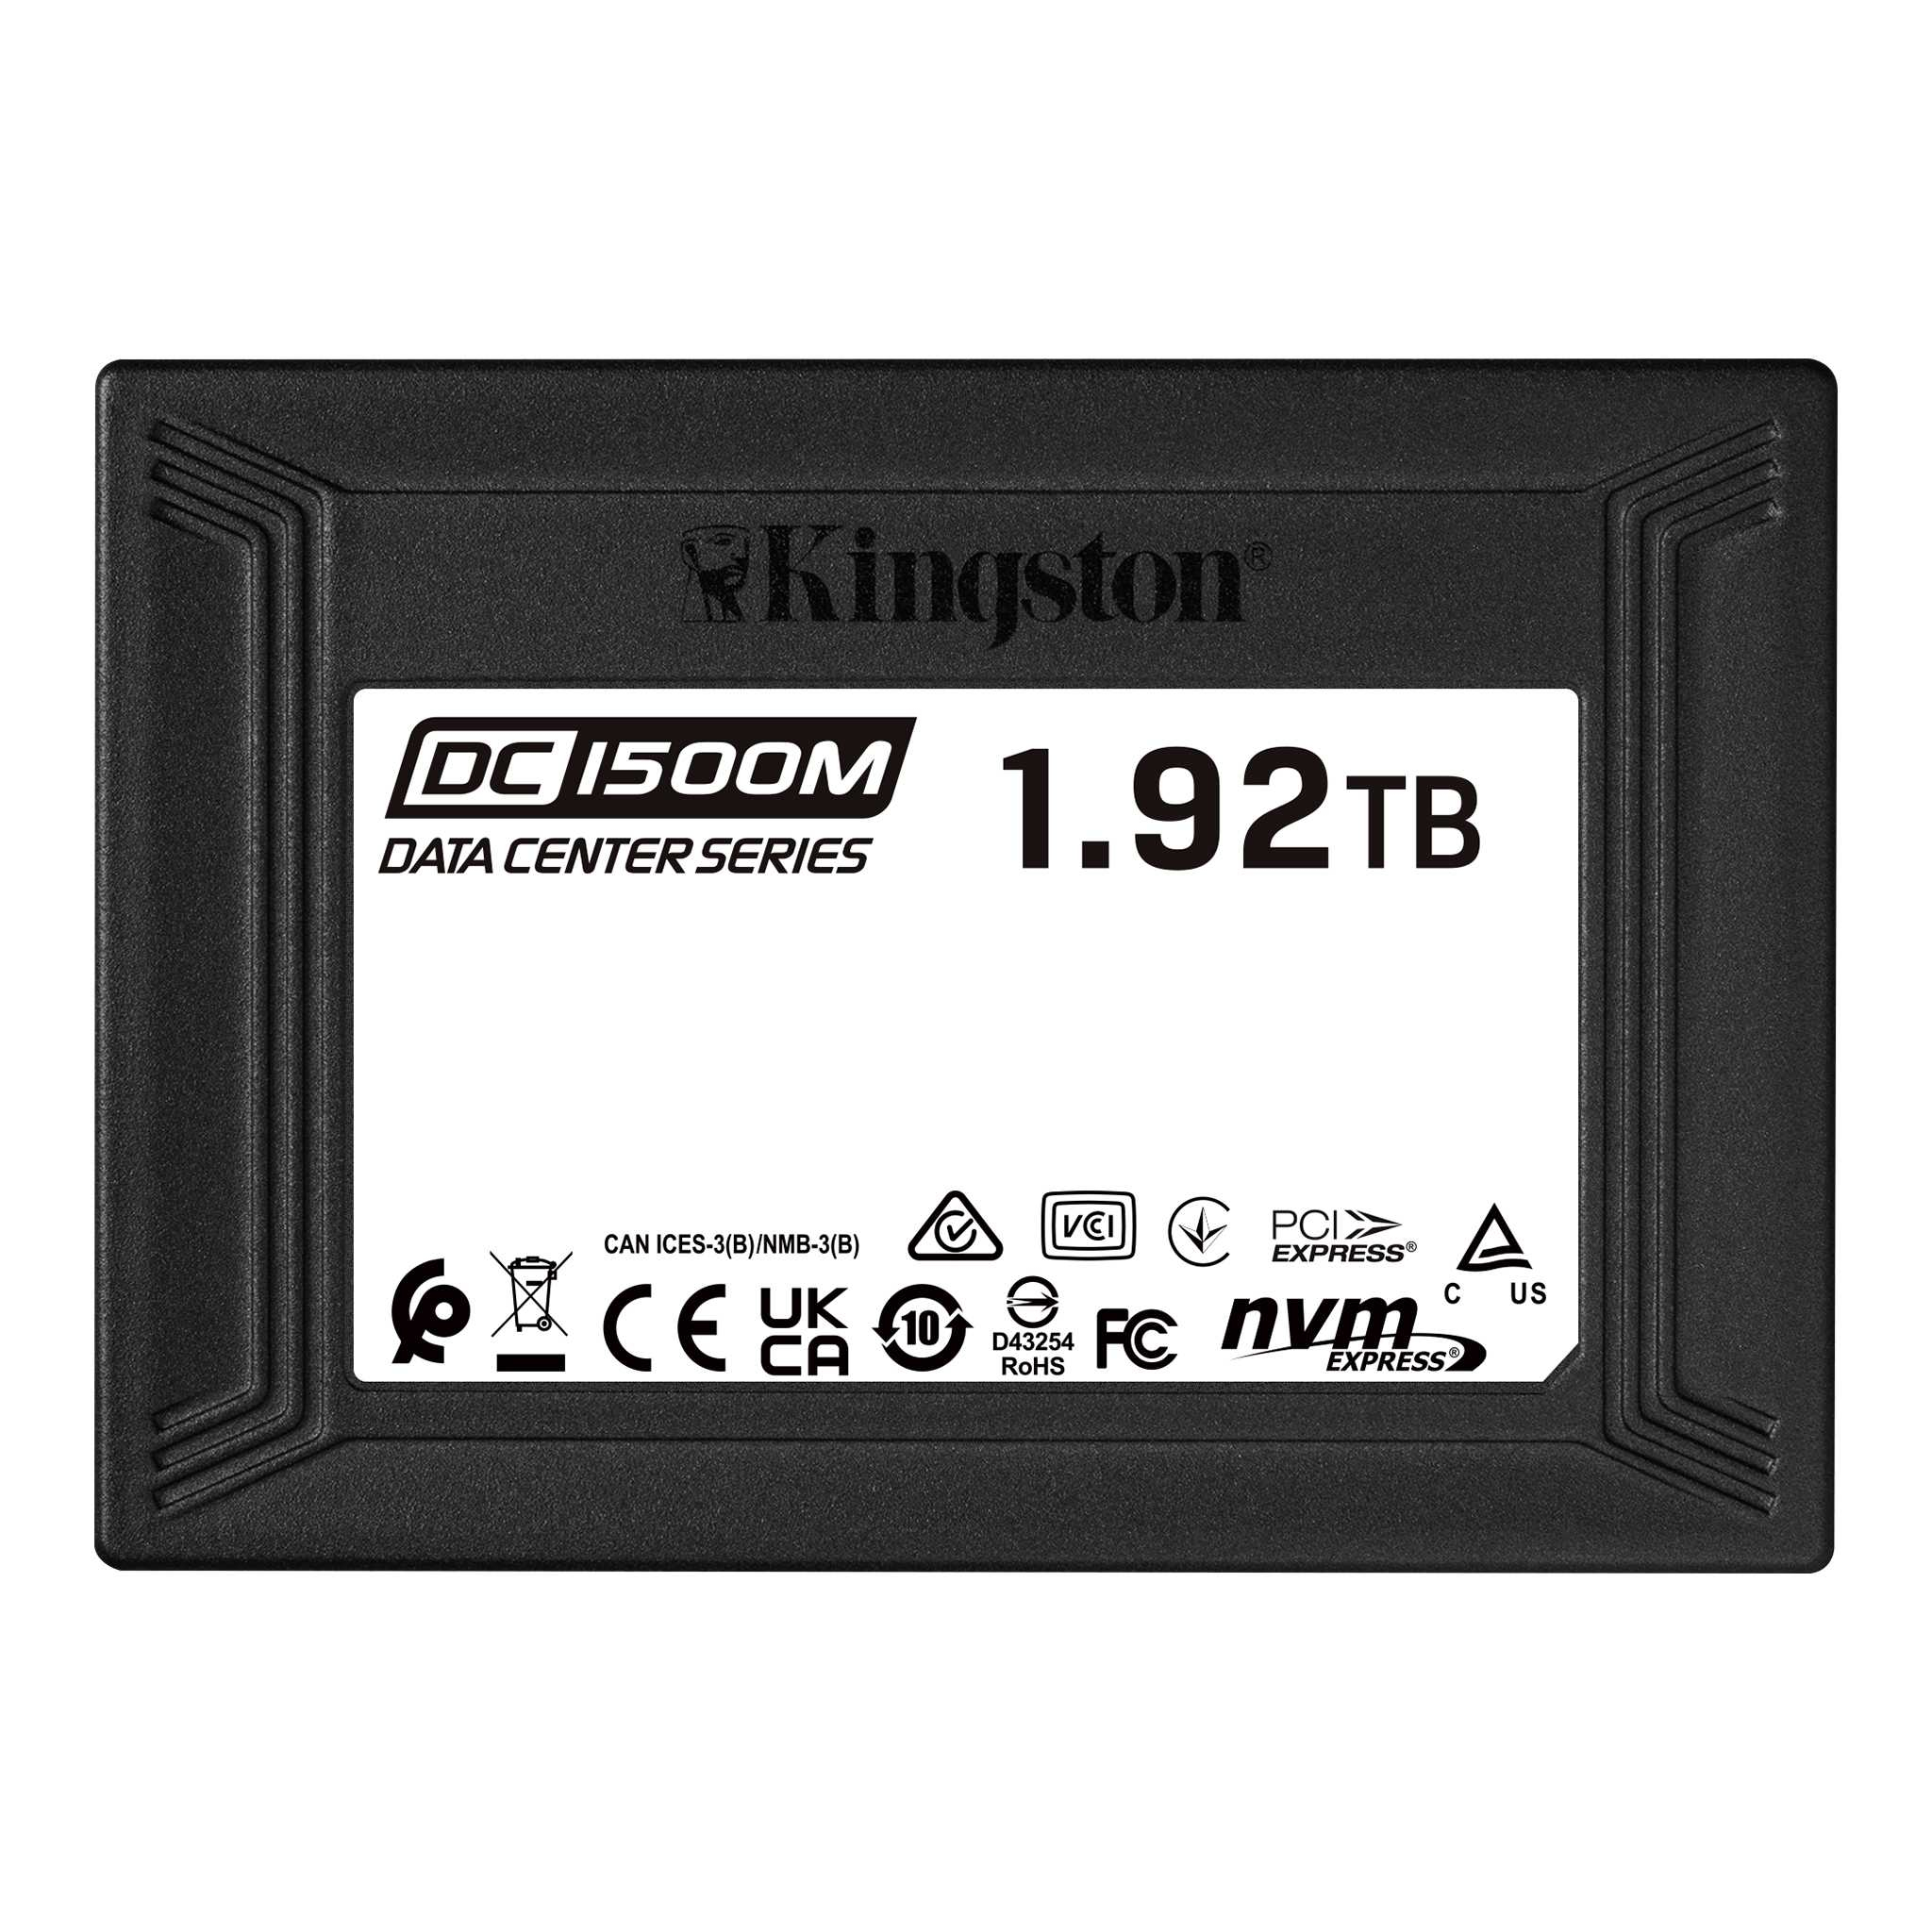 Kingston Technology DC1500M U.2 Enterprise SSD 1920 GB PCI Express 3.0 3D TLC NV